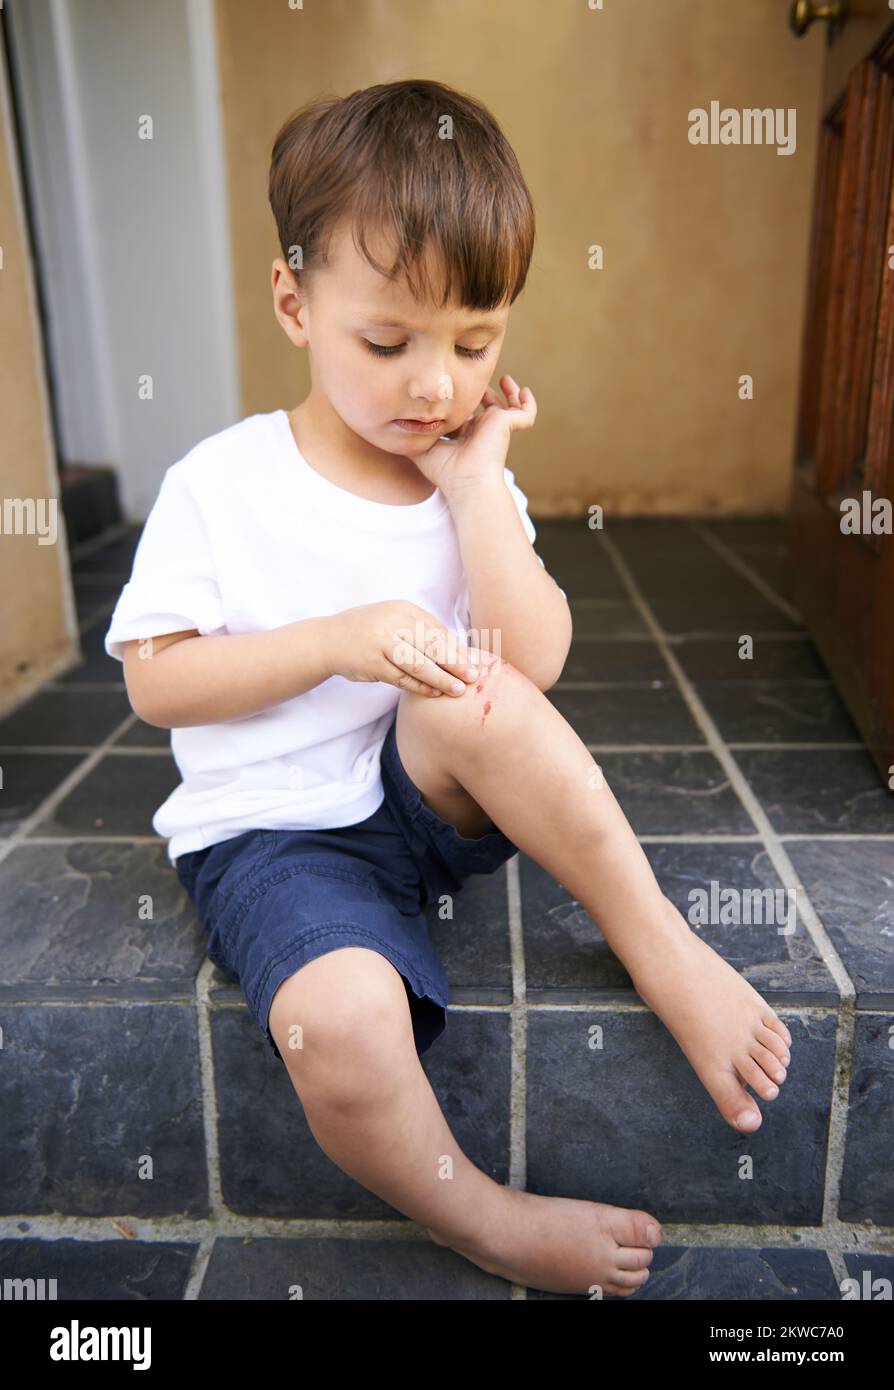 Selbst harte Kerle werden verletzt. Ein süßer kleiner Junge, der auf einer Stufe sitzt und einen Schnitt auf seinem Knie sieht. Stockfoto